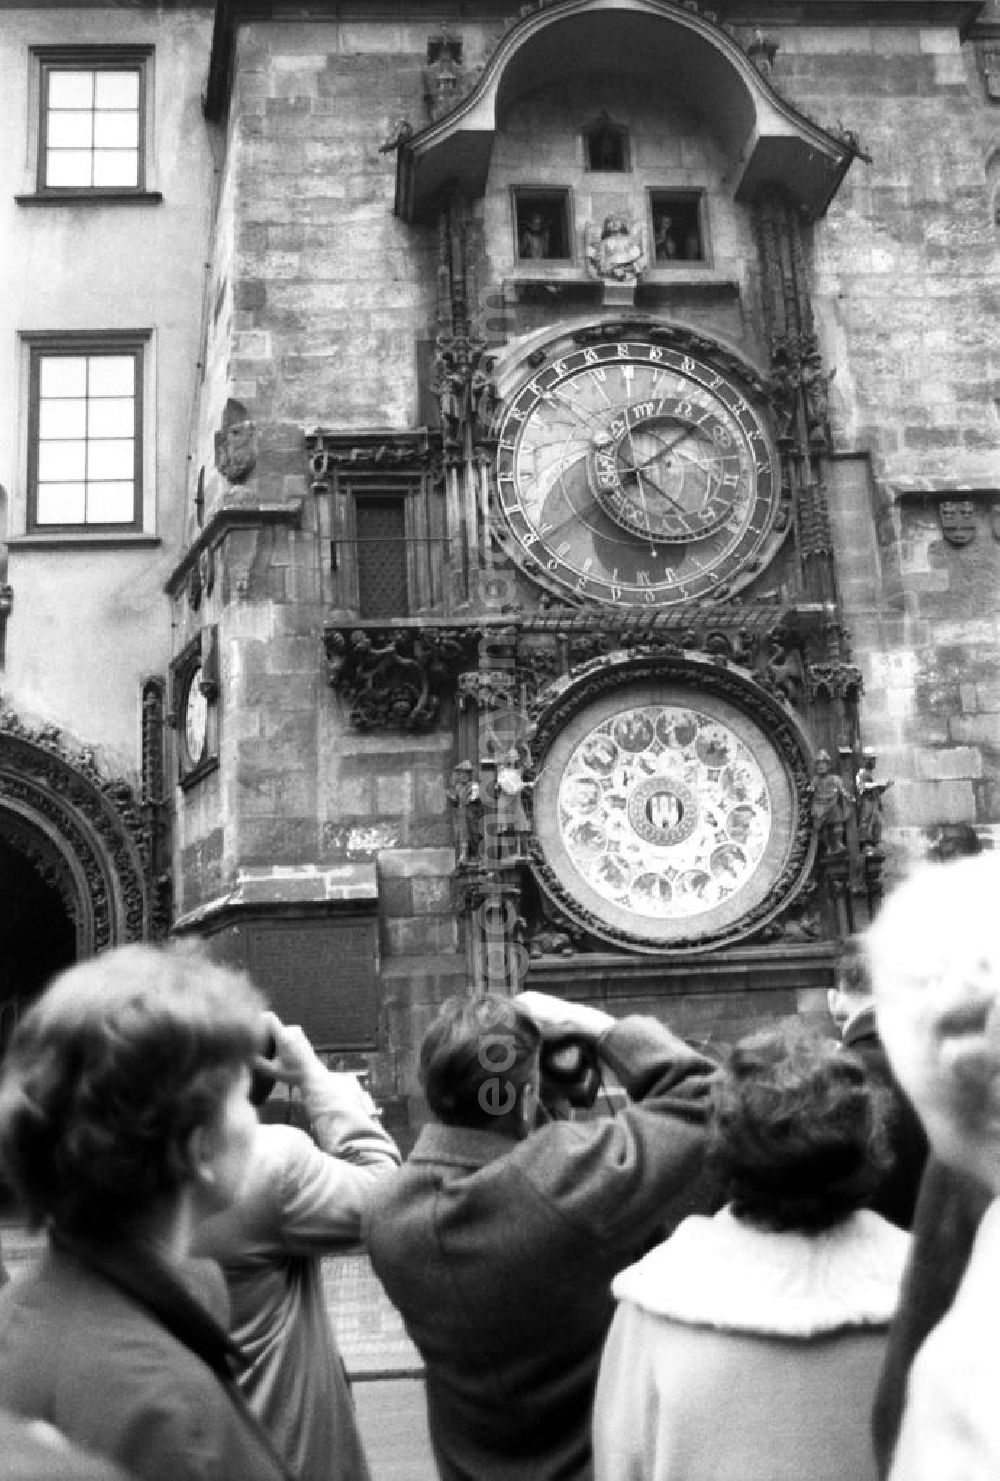 GDR photo archive: Prag - Eine Gruppe von Touristen betrachtet die astronomische Aposteluhr am Altstädter Rathaus. In diesem Jahr wurde die generelle Visumspflicht zwischen der DDR und der CSSR abgeschafft.